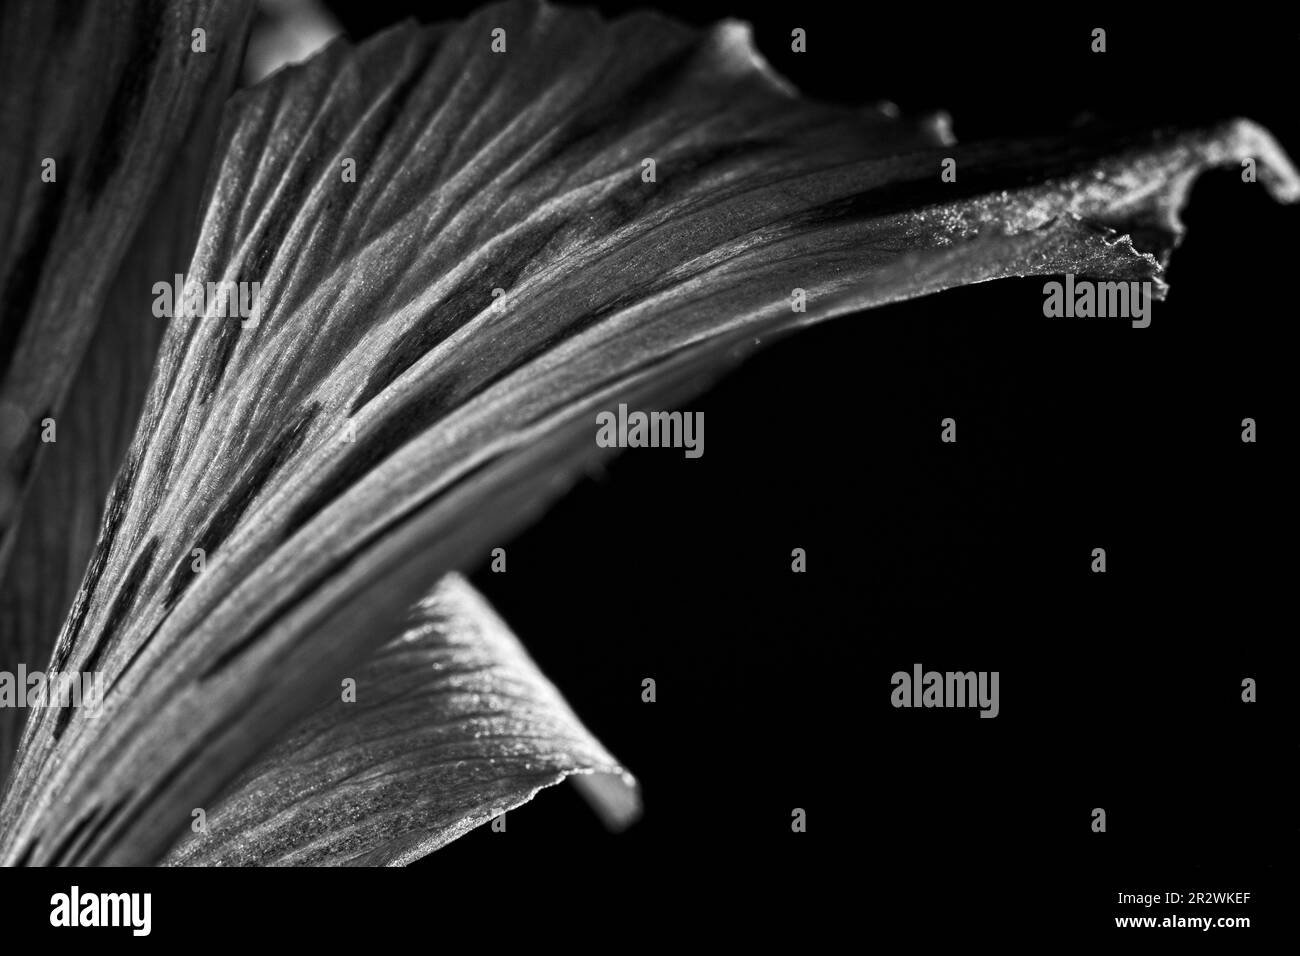 Immagine in bianco e nero di un fiore succulento. Contrasto elevato, sfondo nero. Virare in modo netto e sfocare in modo morbido. Adatto per lobby e camere d'hotel Foto Stock